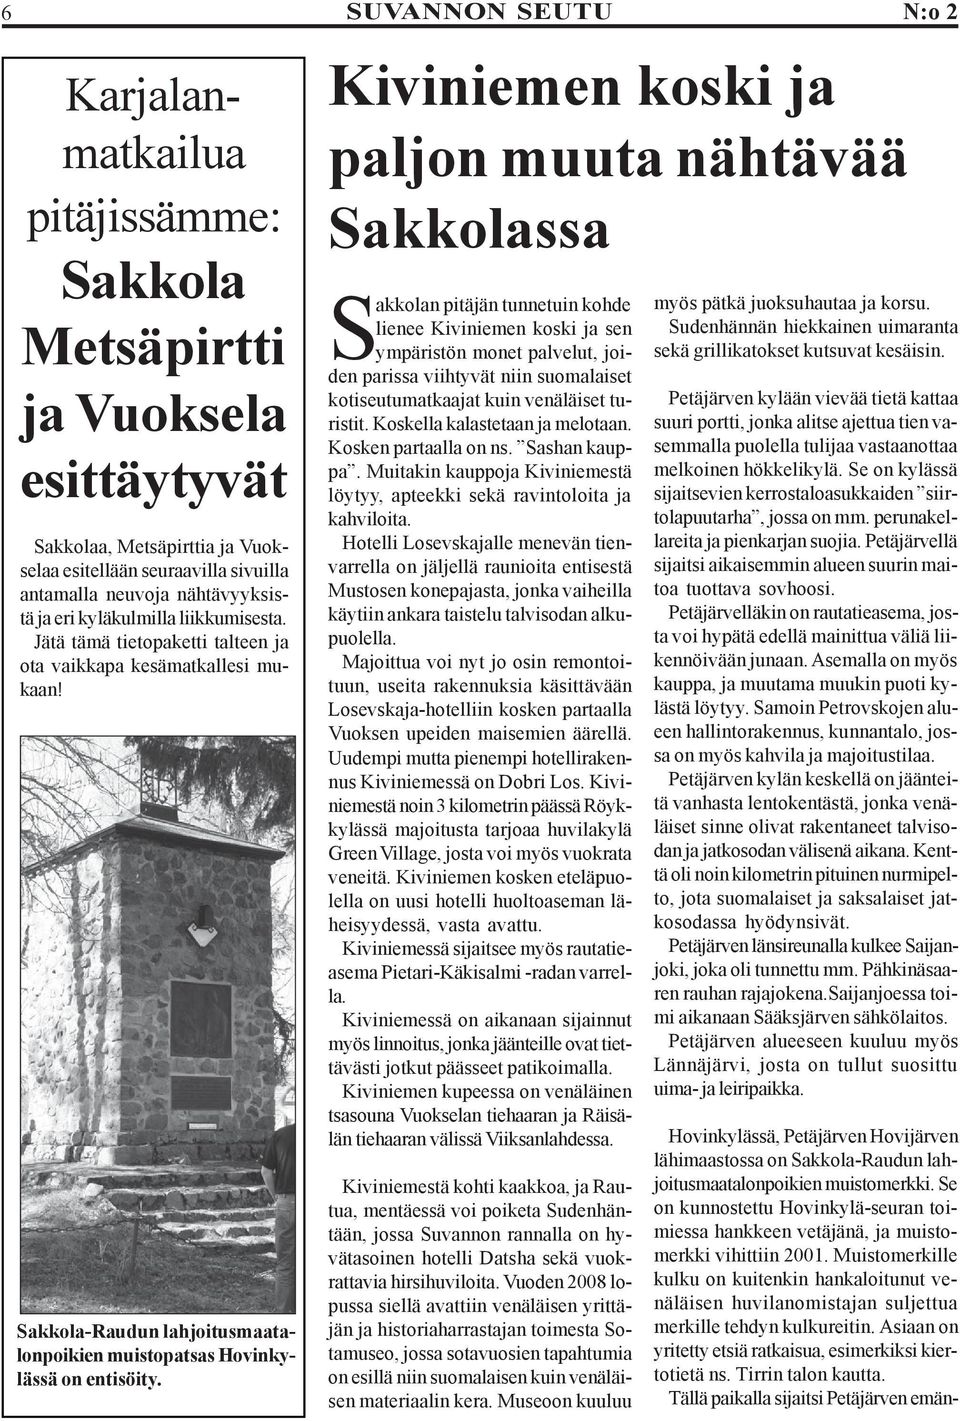 Kiviniemen koski ja paljon muuta nähtävää Sakkolassa Sakkolan pitäjän tunnetuin kohde lienee Kiviniemen koski ja sen ympäristön monet palvelut, joiden parissa viihtyvät niin suomalaiset